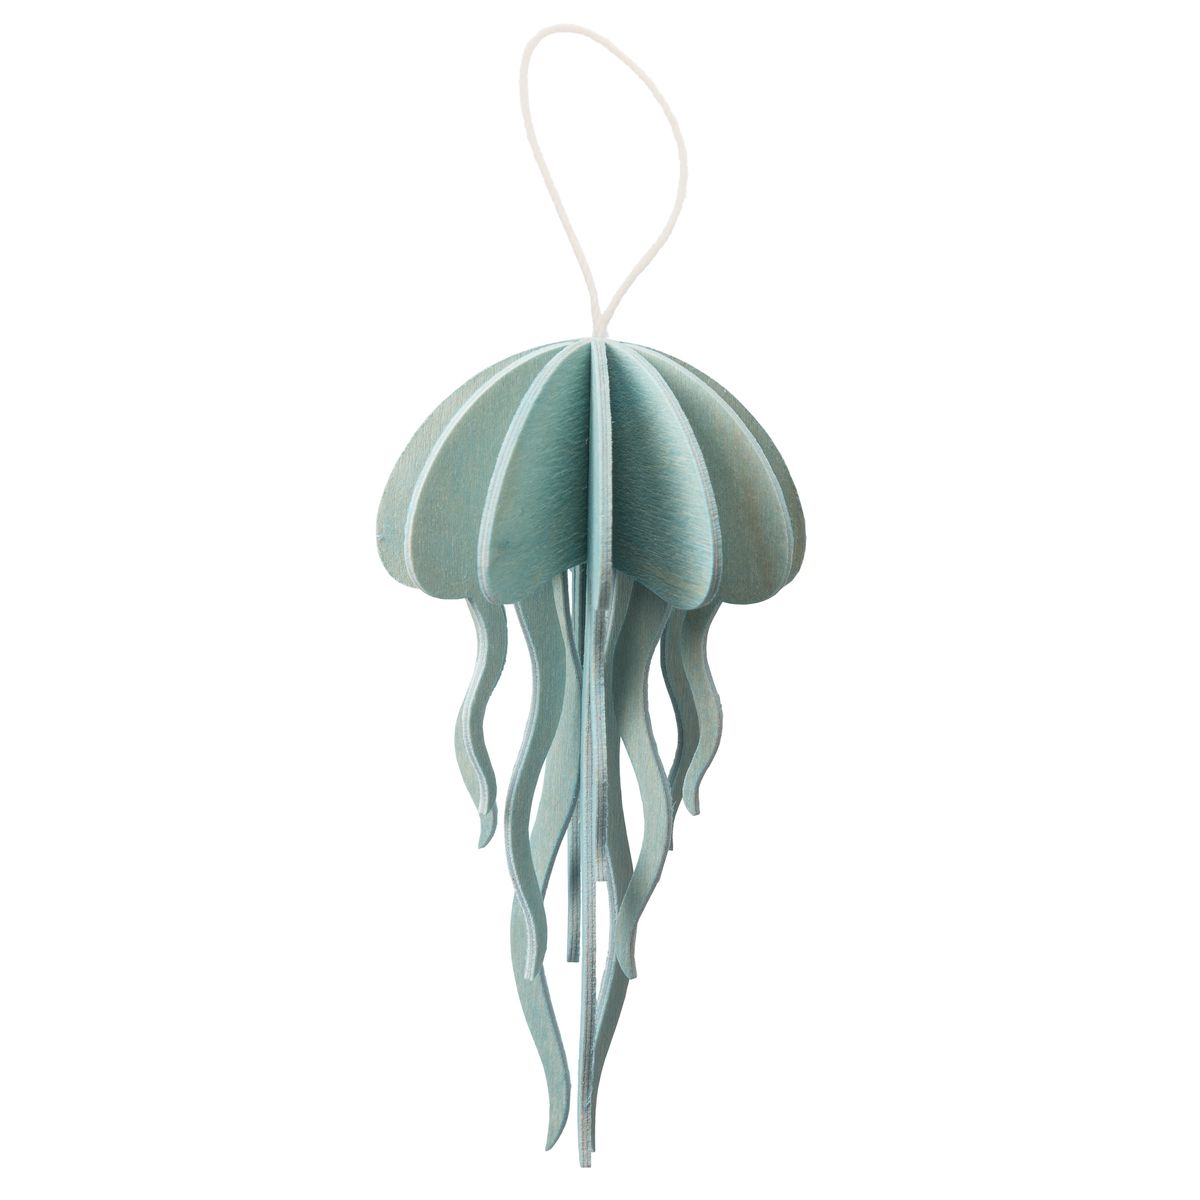 La méduse : carte pour construire un 3D en bois (S – bleu ciel)